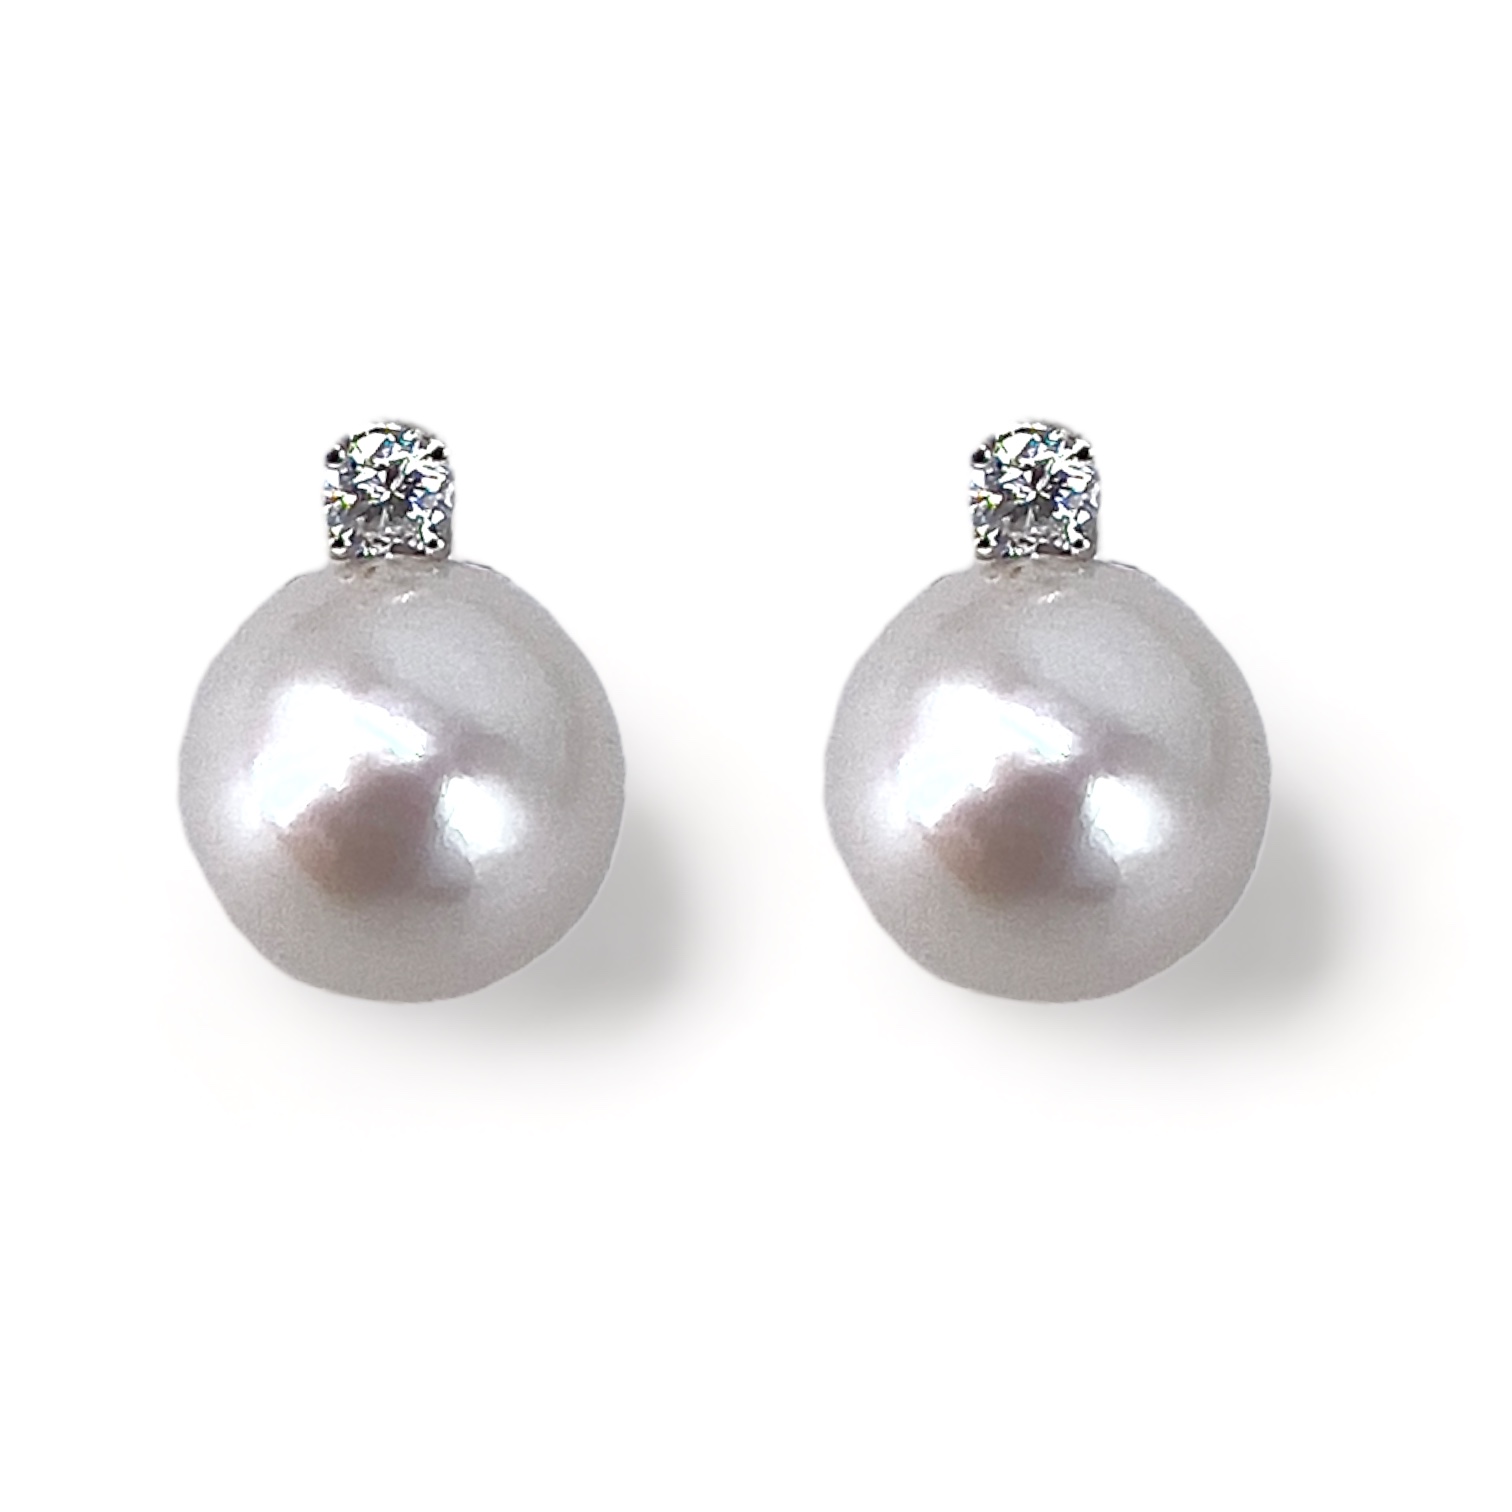 Orecchini Perle oro bianco e Diamanti Art. ORP279-2